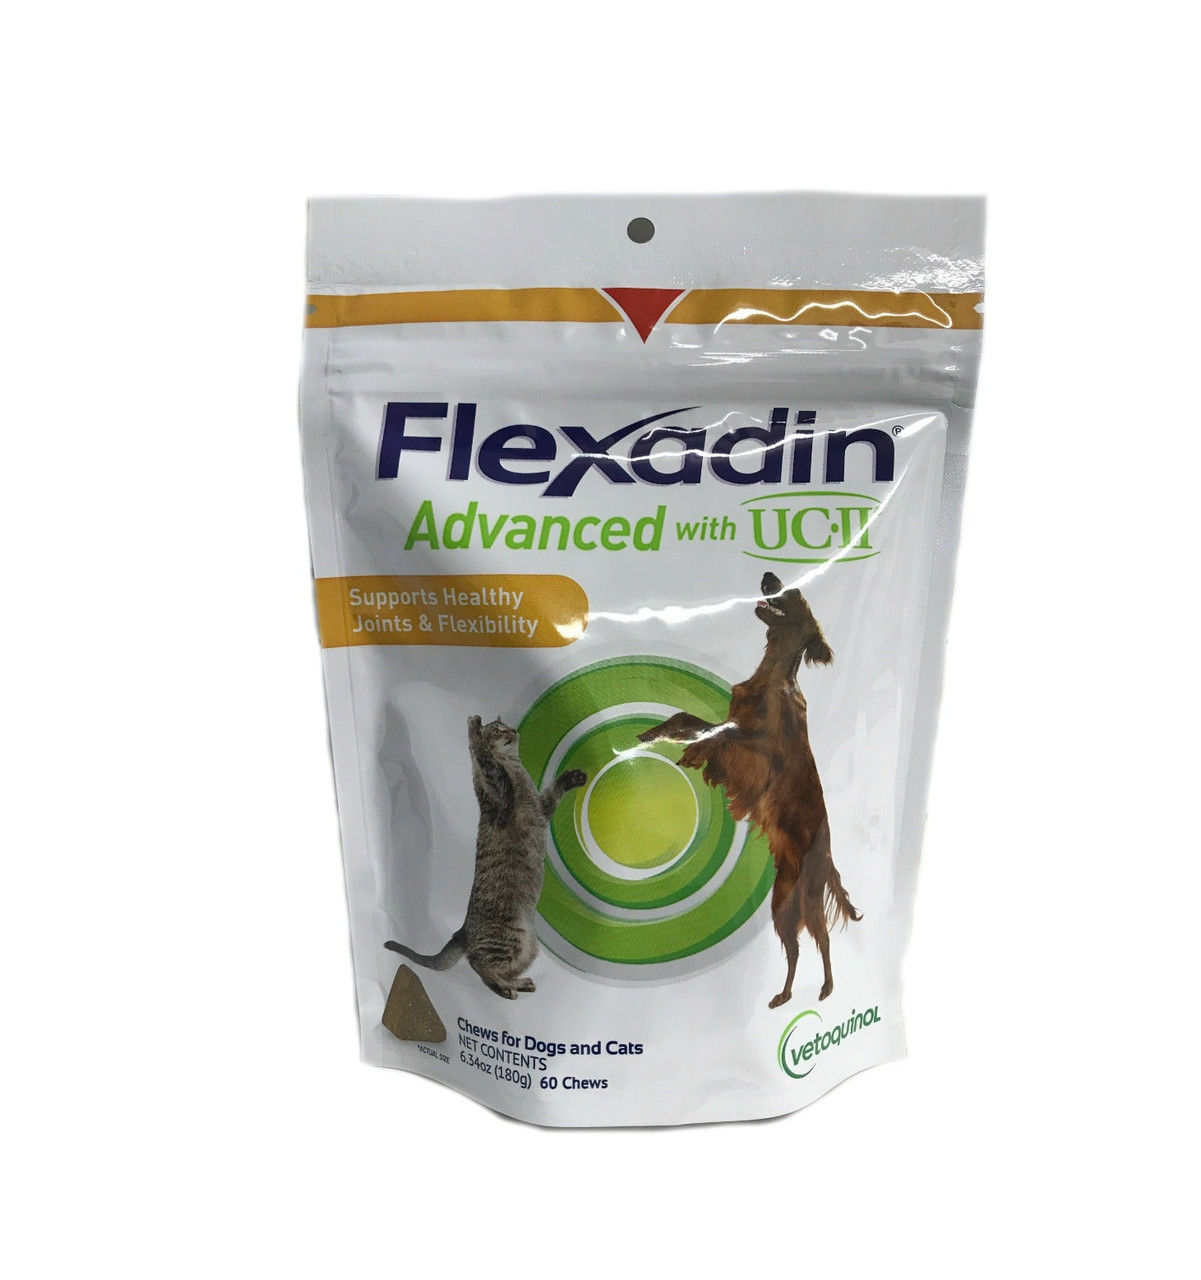 Flexadin Plus®  Vetoquinol Canada